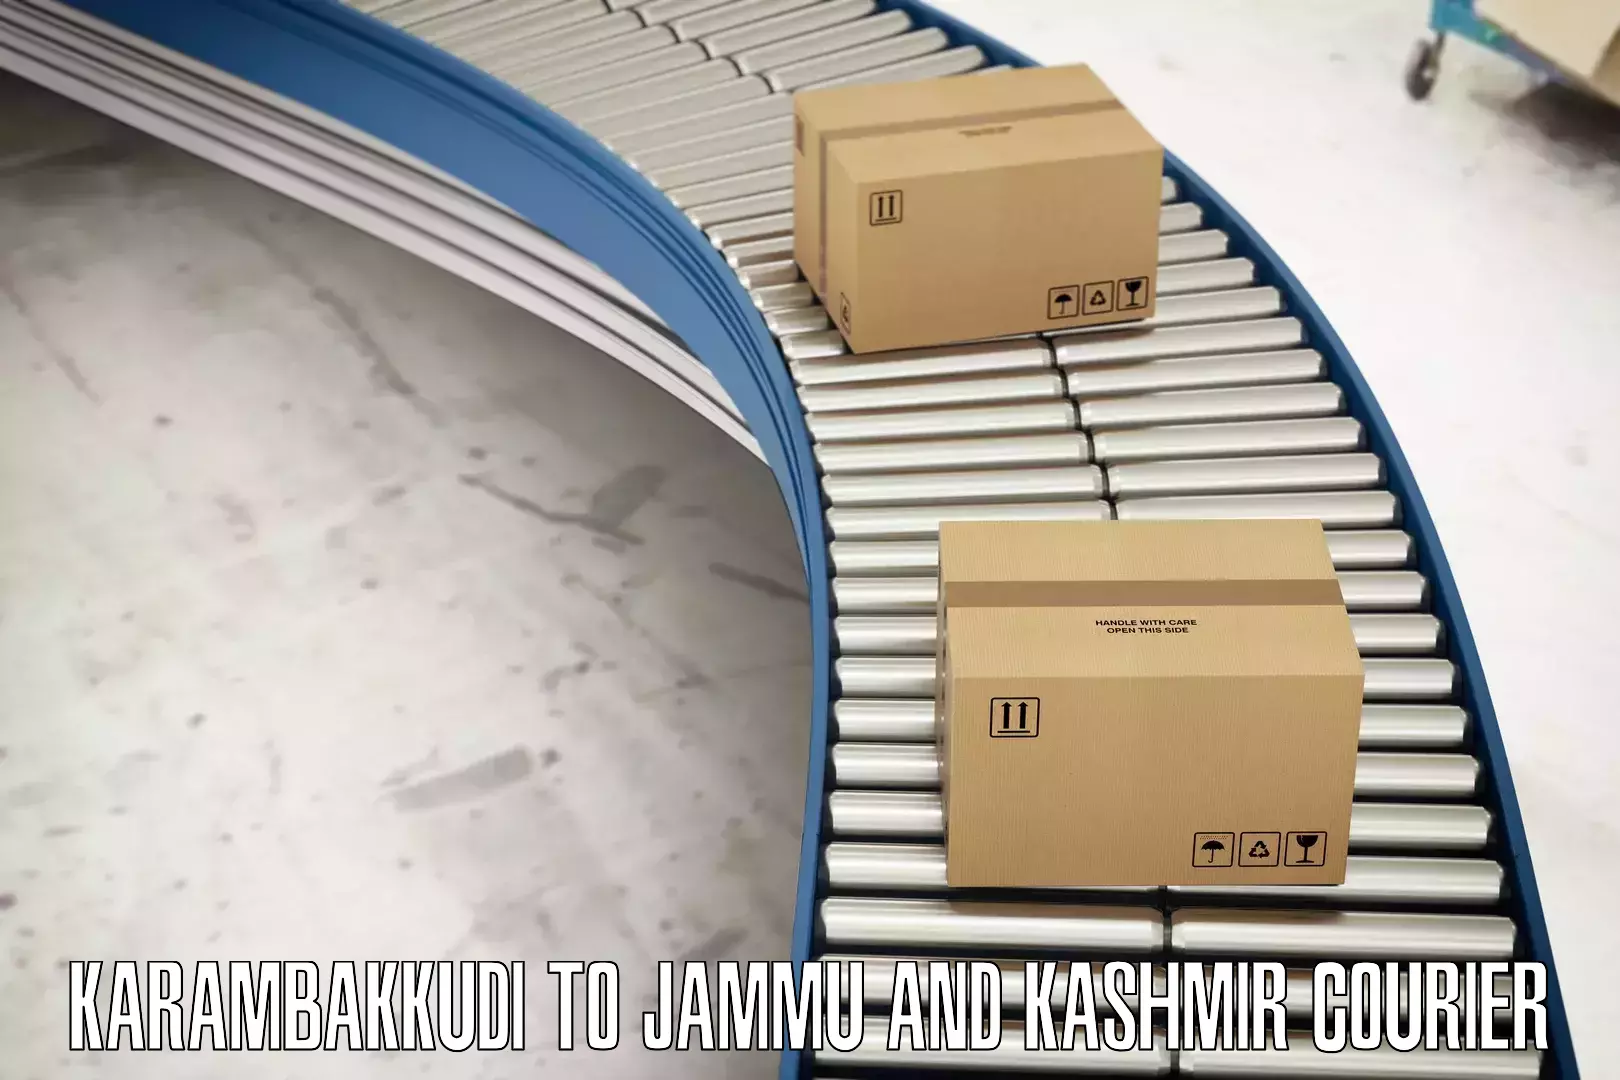 High-priority parcel service Karambakkudi to Ramban